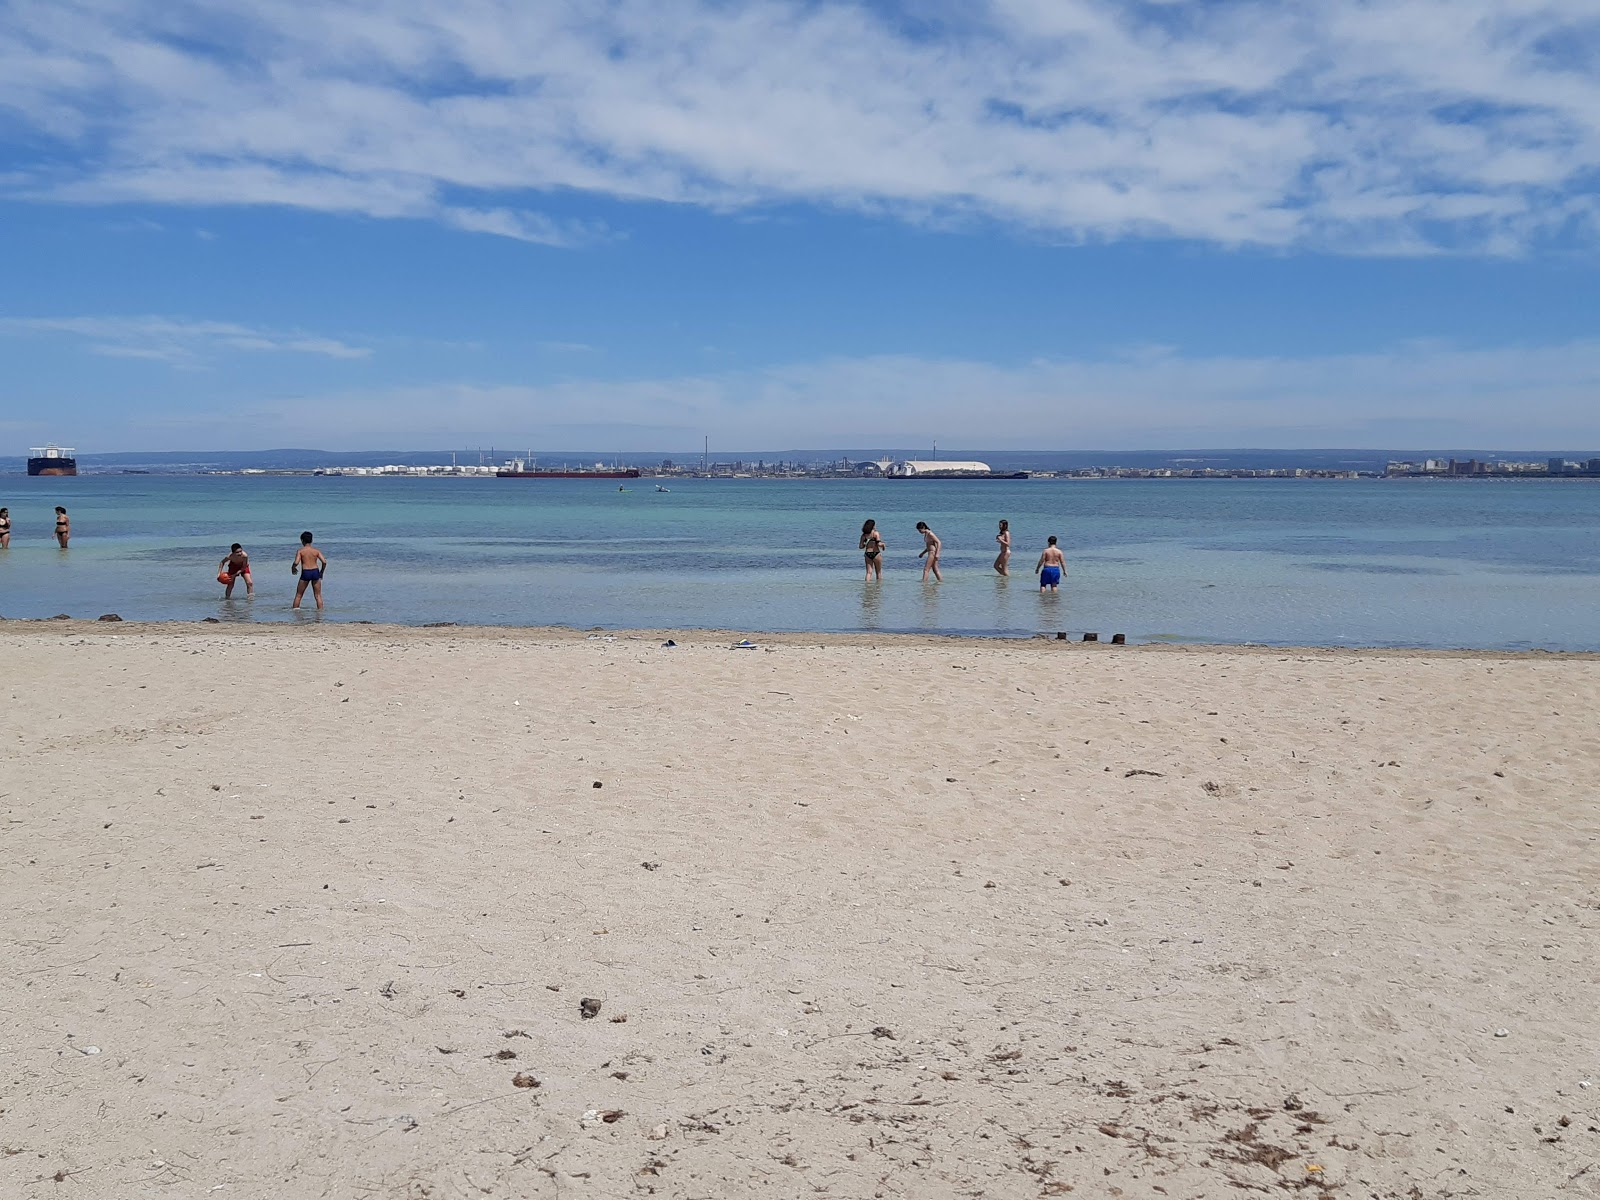 Arenile beach'in fotoğrafı - Çocuklu aile gezginleri için önerilir